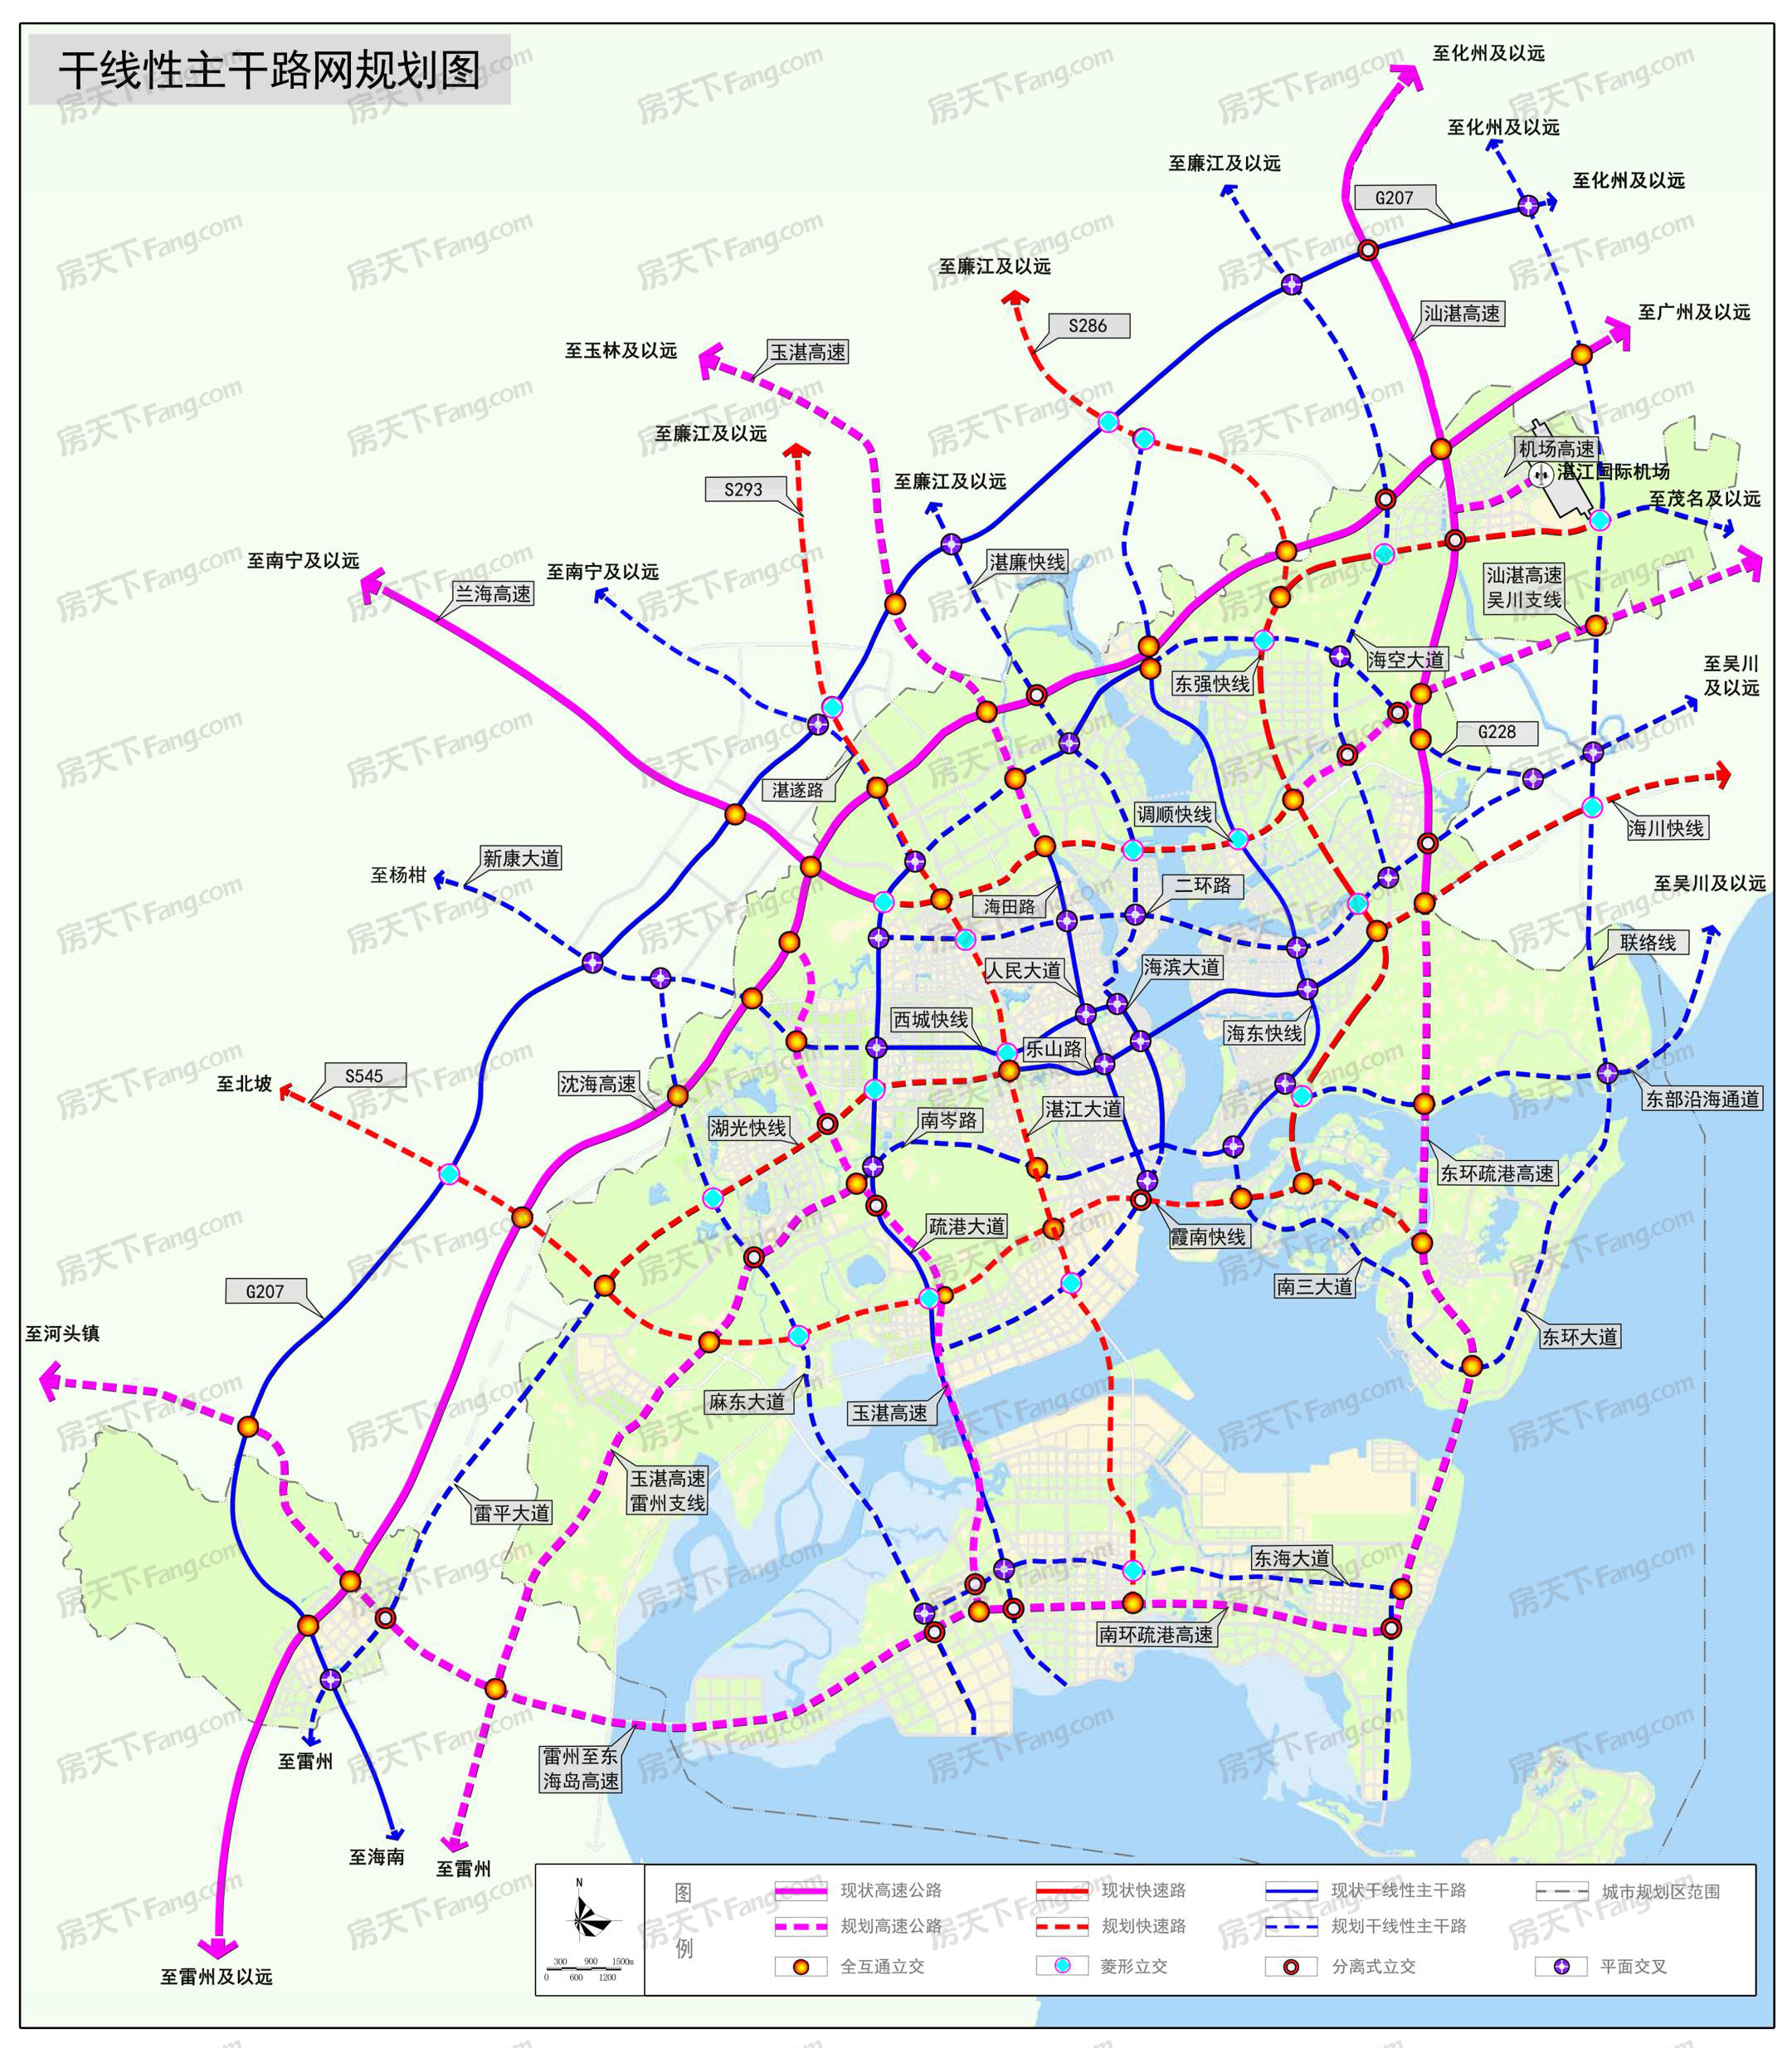 湛江市干线路网专项规划(草案)批前公示 未来湛江城市